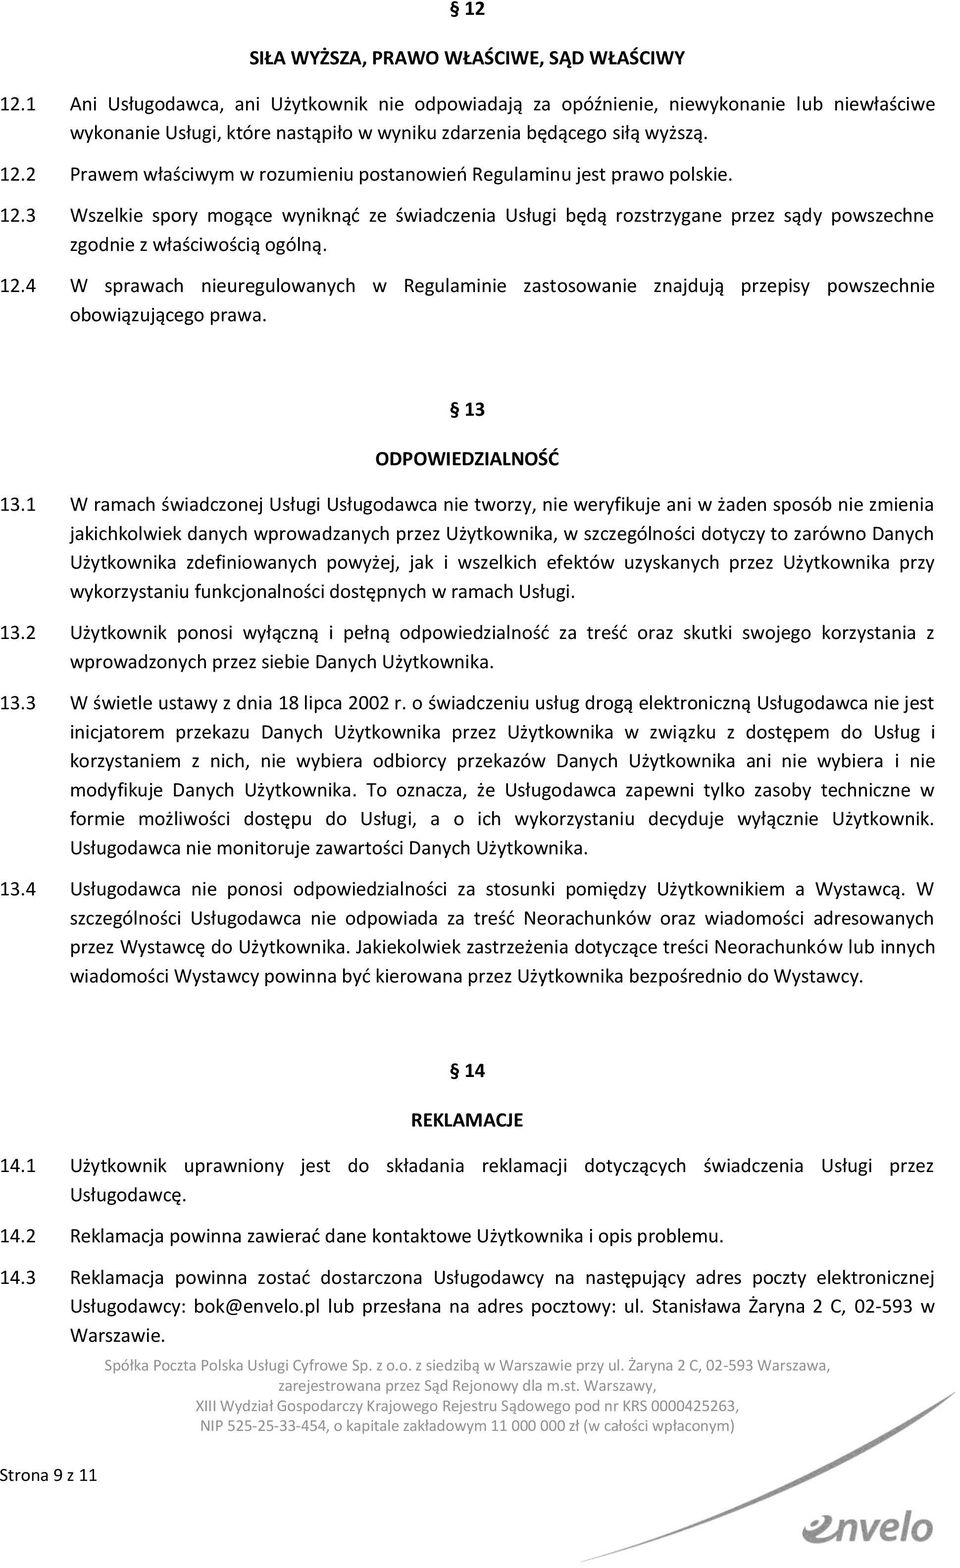 2 Prawem właściwym w rozumieniu postanowień Regulaminu jest prawo polskie. 12.